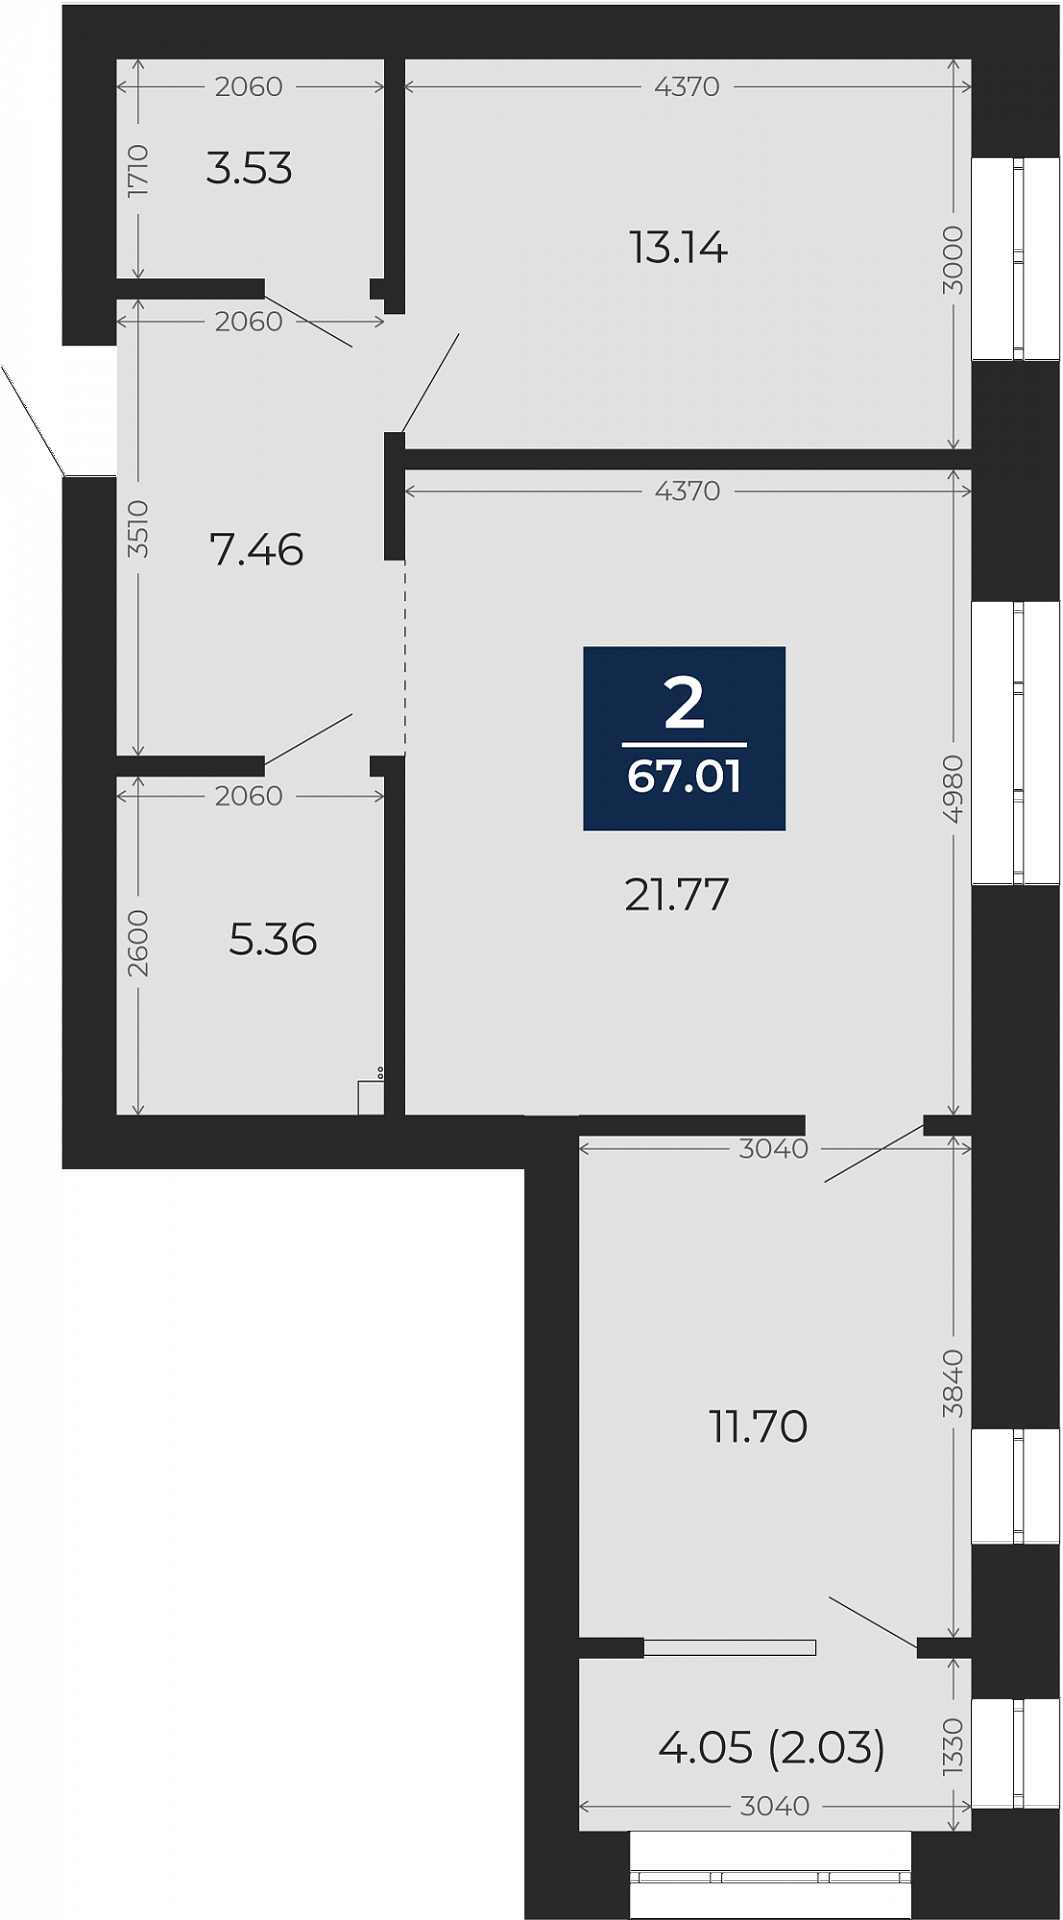 Квартира № 146, 2-комнатная, 67.01 кв. м, 5 этаж